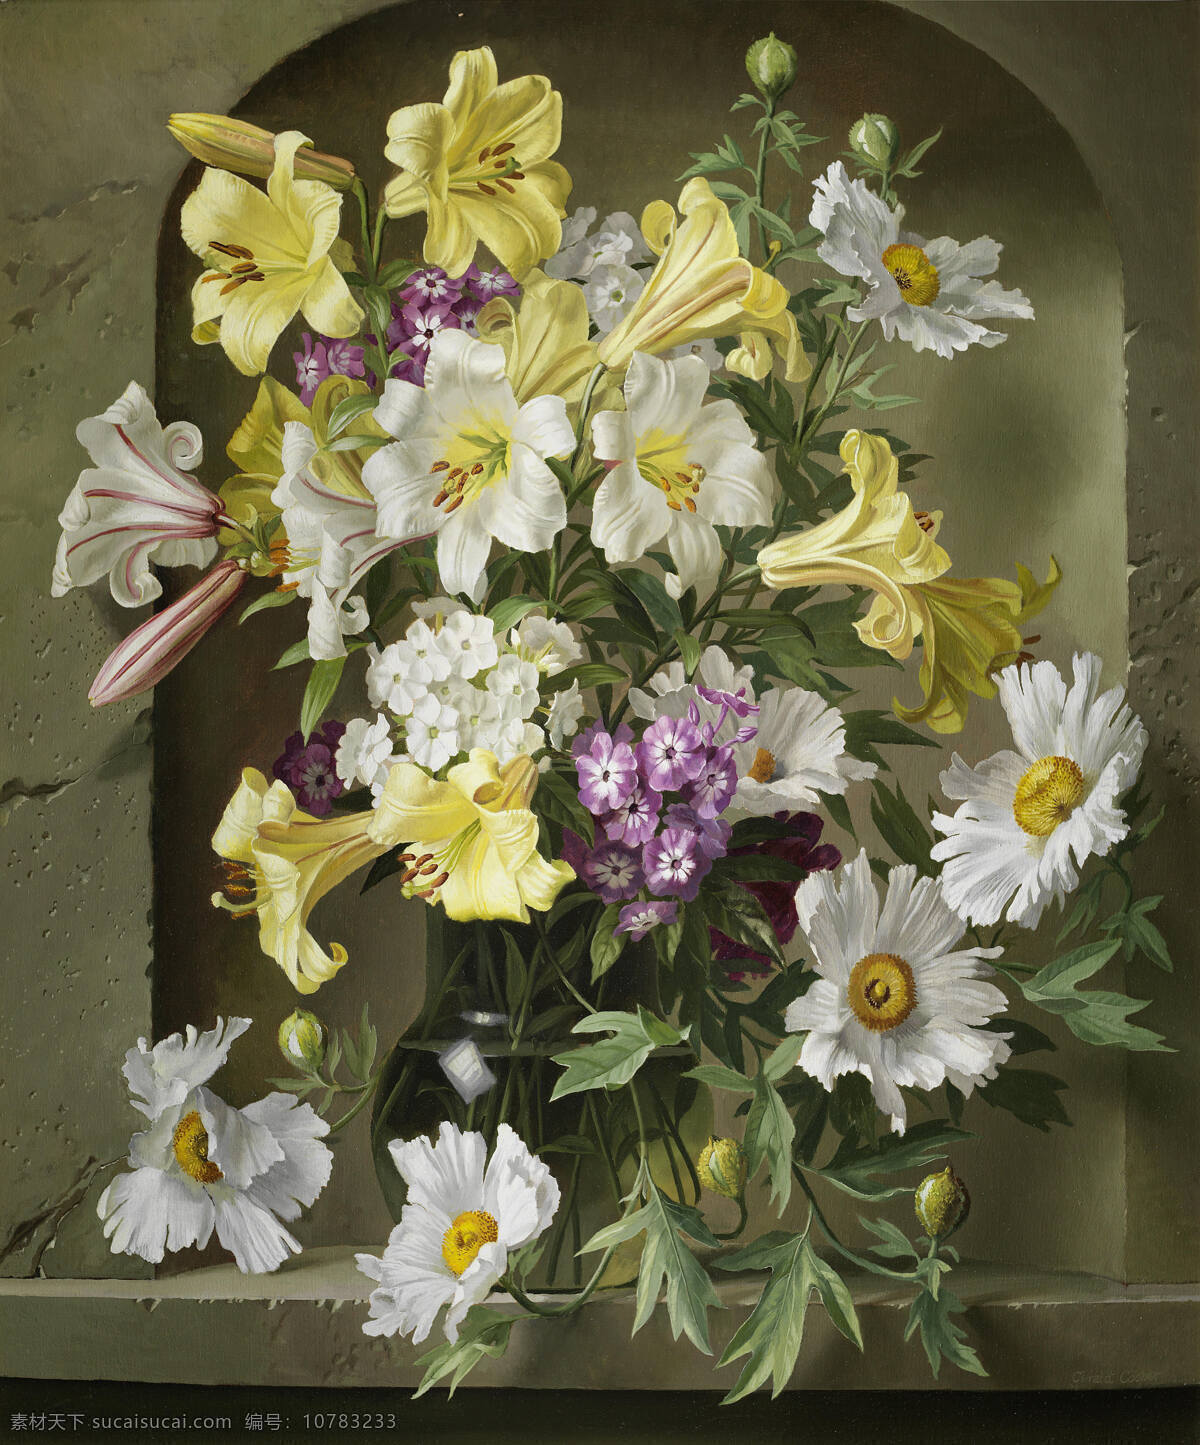 静物鲜花 百合 混搭鲜花 永恒之美 玻璃花瓶 19世纪油画 油画 绘画书法 文化艺术